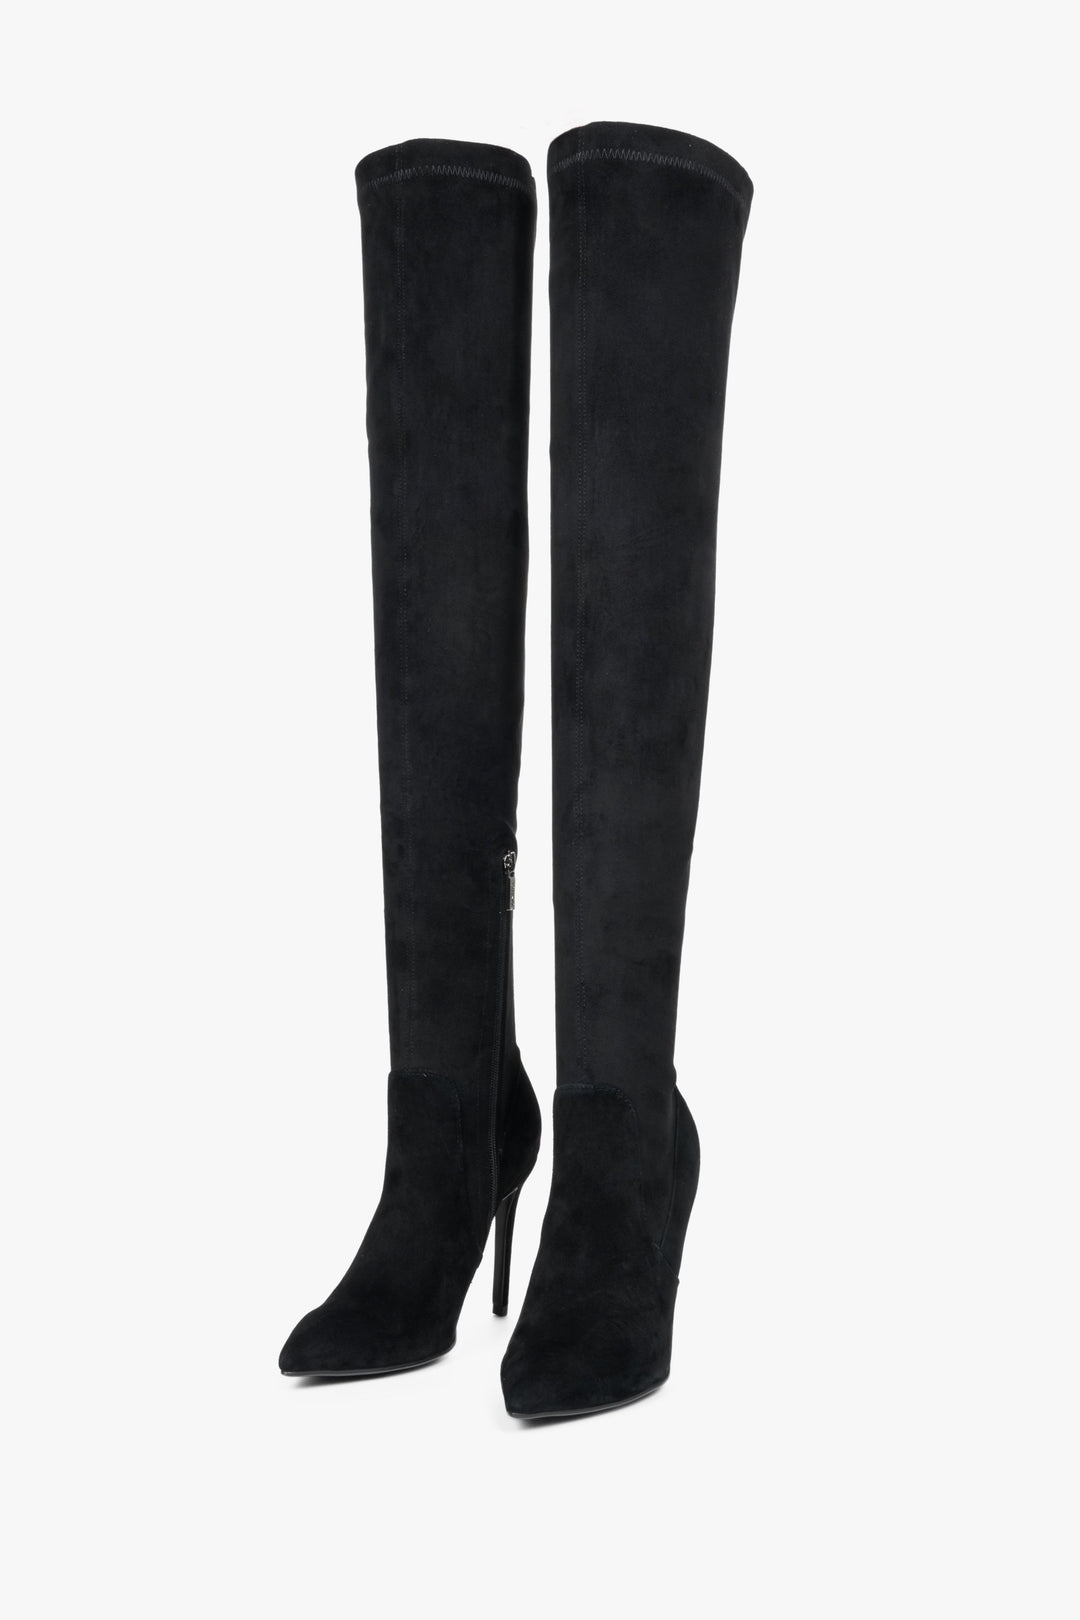 Kozaki damskie Estro w kolorze czarnym z wysoką, elastyczną cholewą - przód butów.